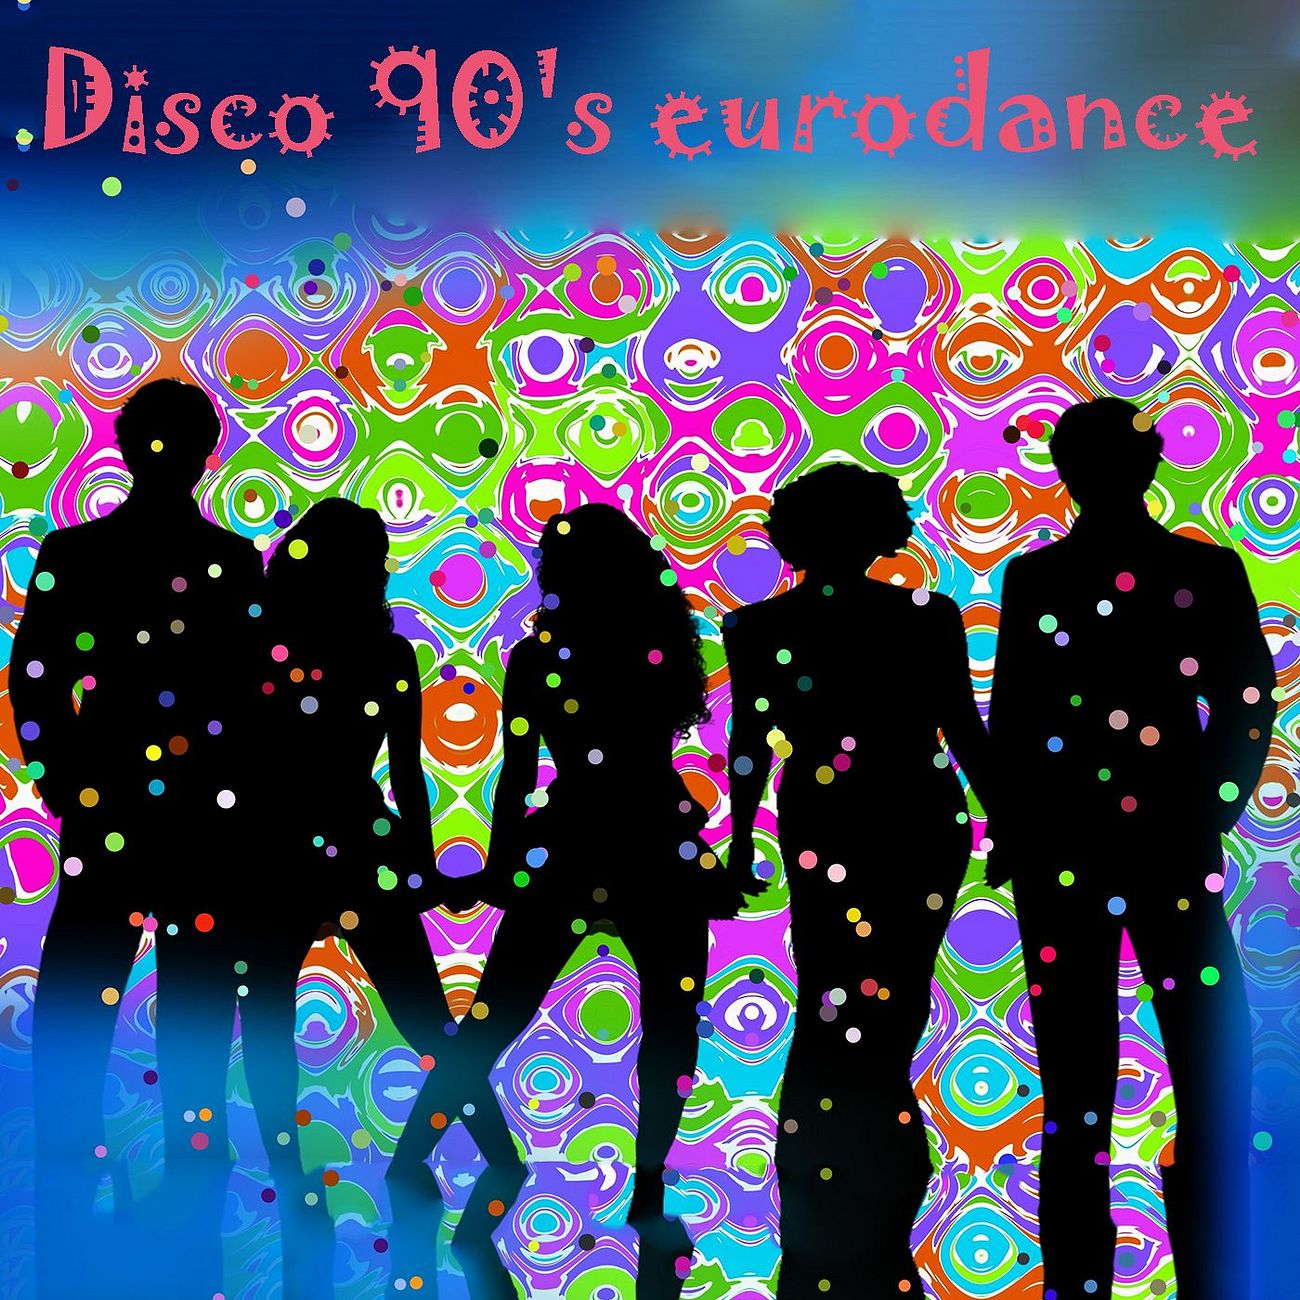 Disco 90's eurodance